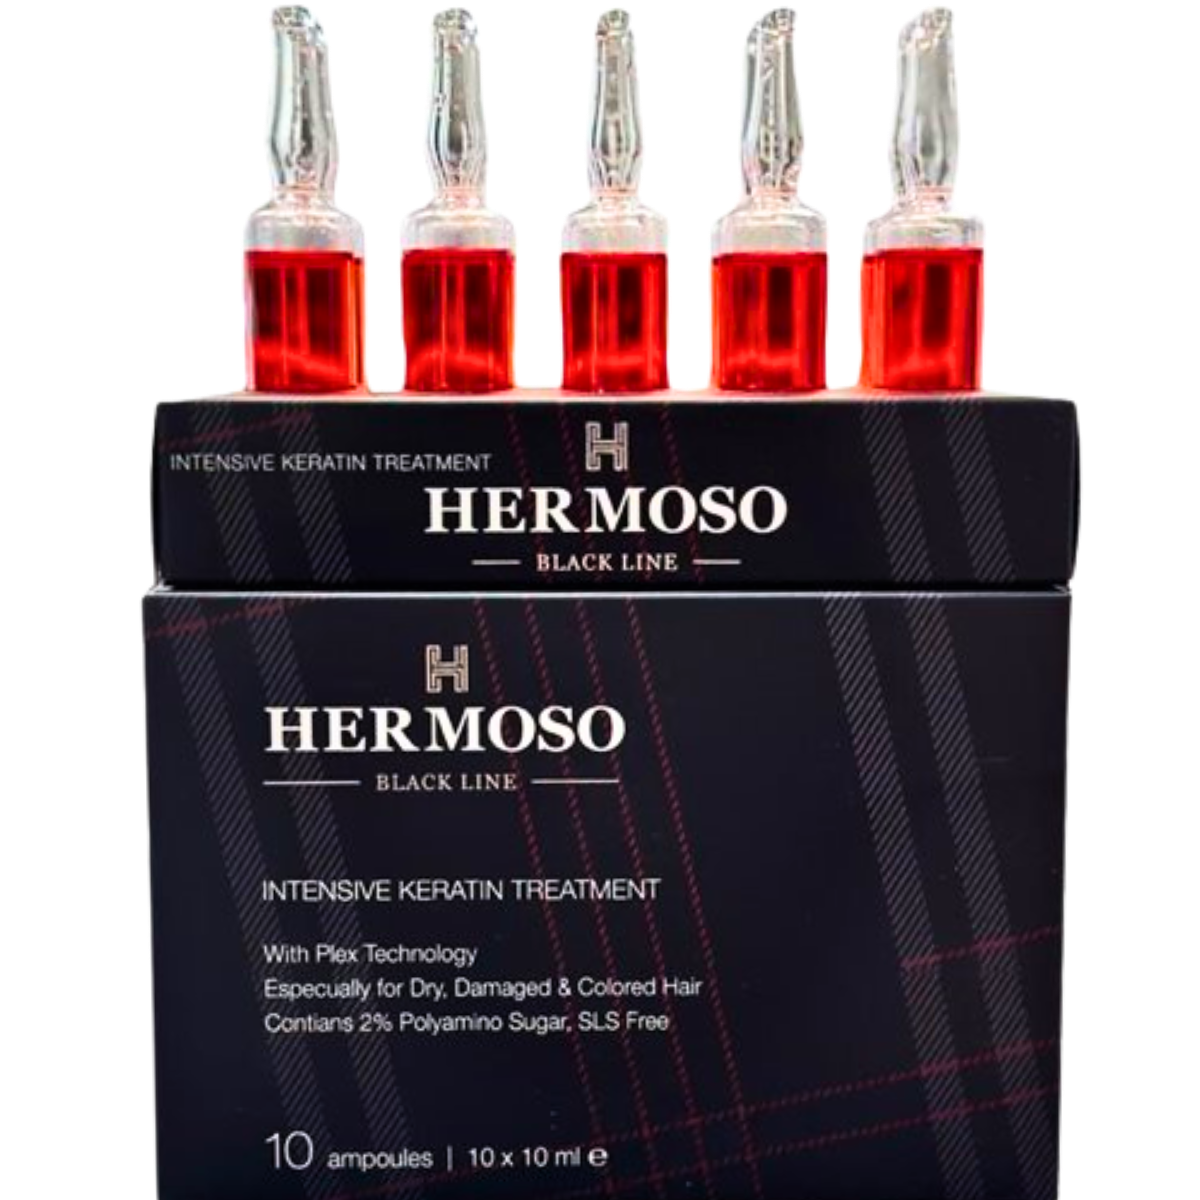 מארז 10 אמפולות HERMOSO בלק ליין לטיפול בשיער יבש, פגום, שיער שעבר טיפולים כימיים, צבע והבהרות הרמוסו